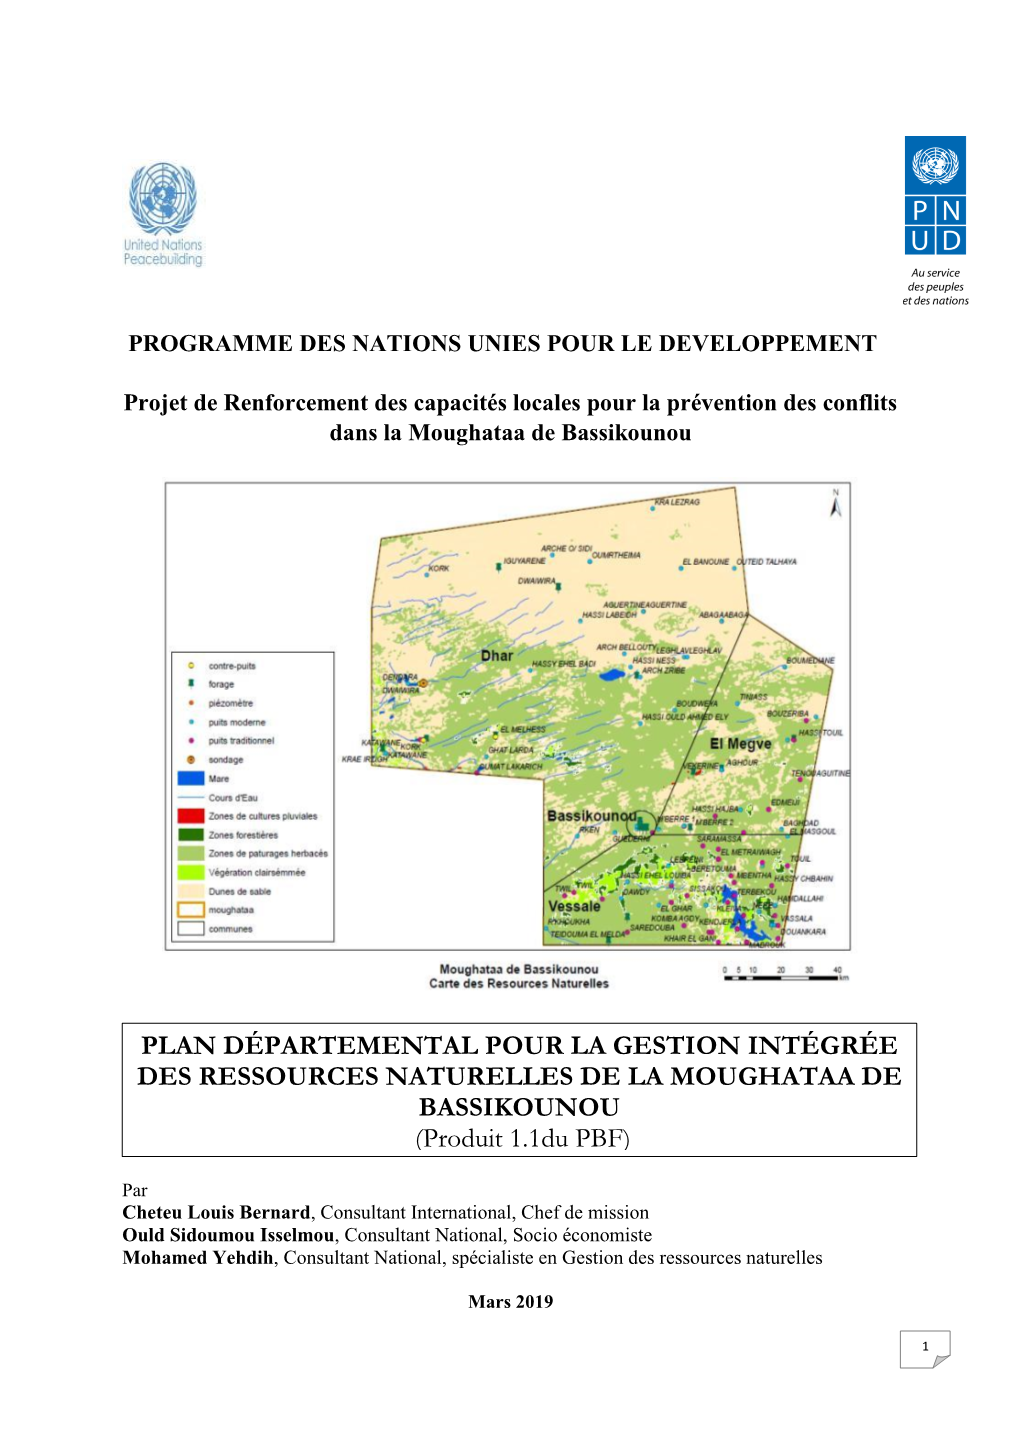 Plan Départemental Pour La Gestion Intégrée Des Ressources Naturelles De La Moughataa De